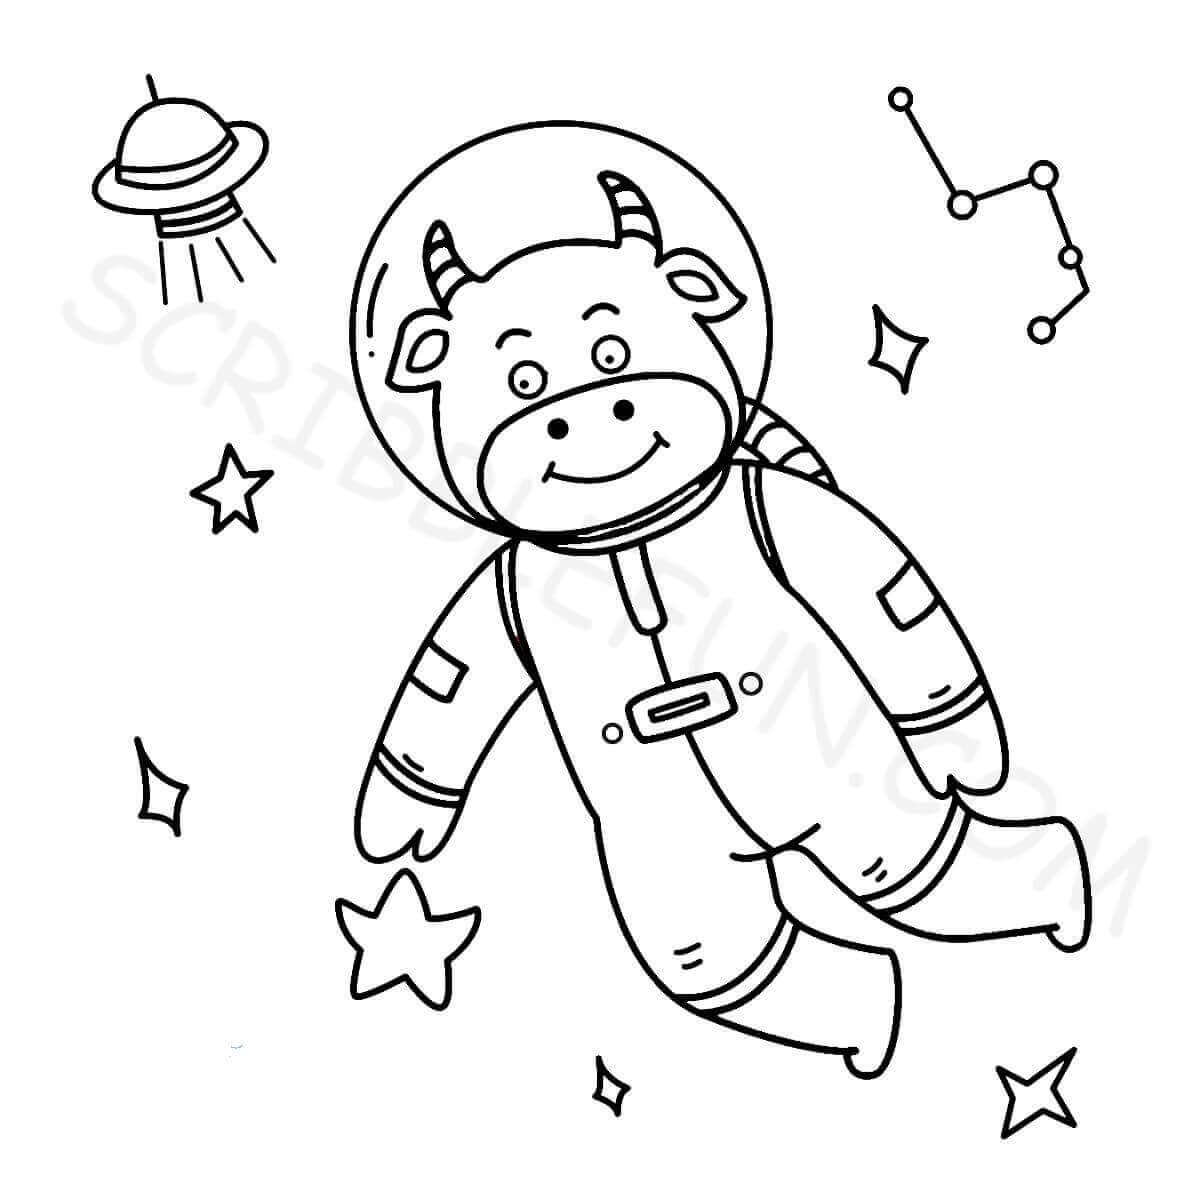 Cow as an astronaut